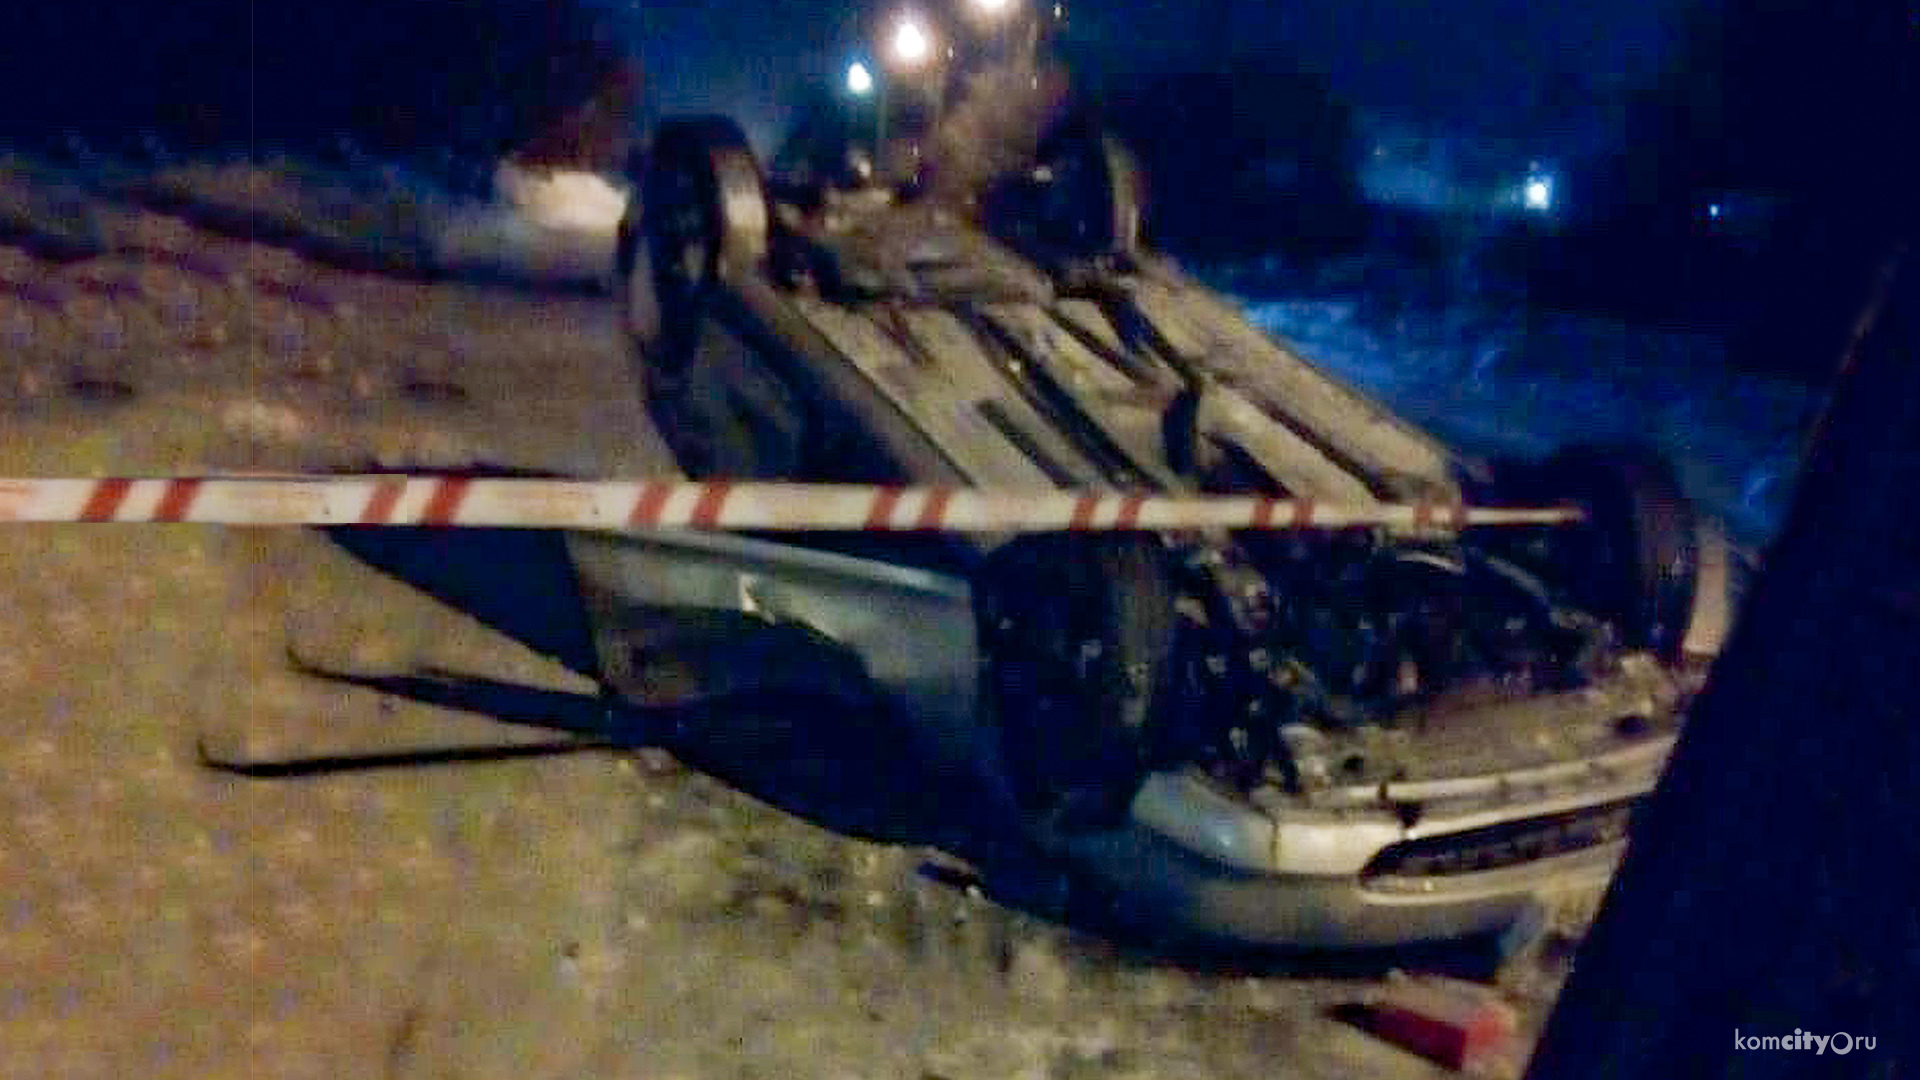 На Дзержинского «Хонда Цивик» снесла столб, водитель погиб